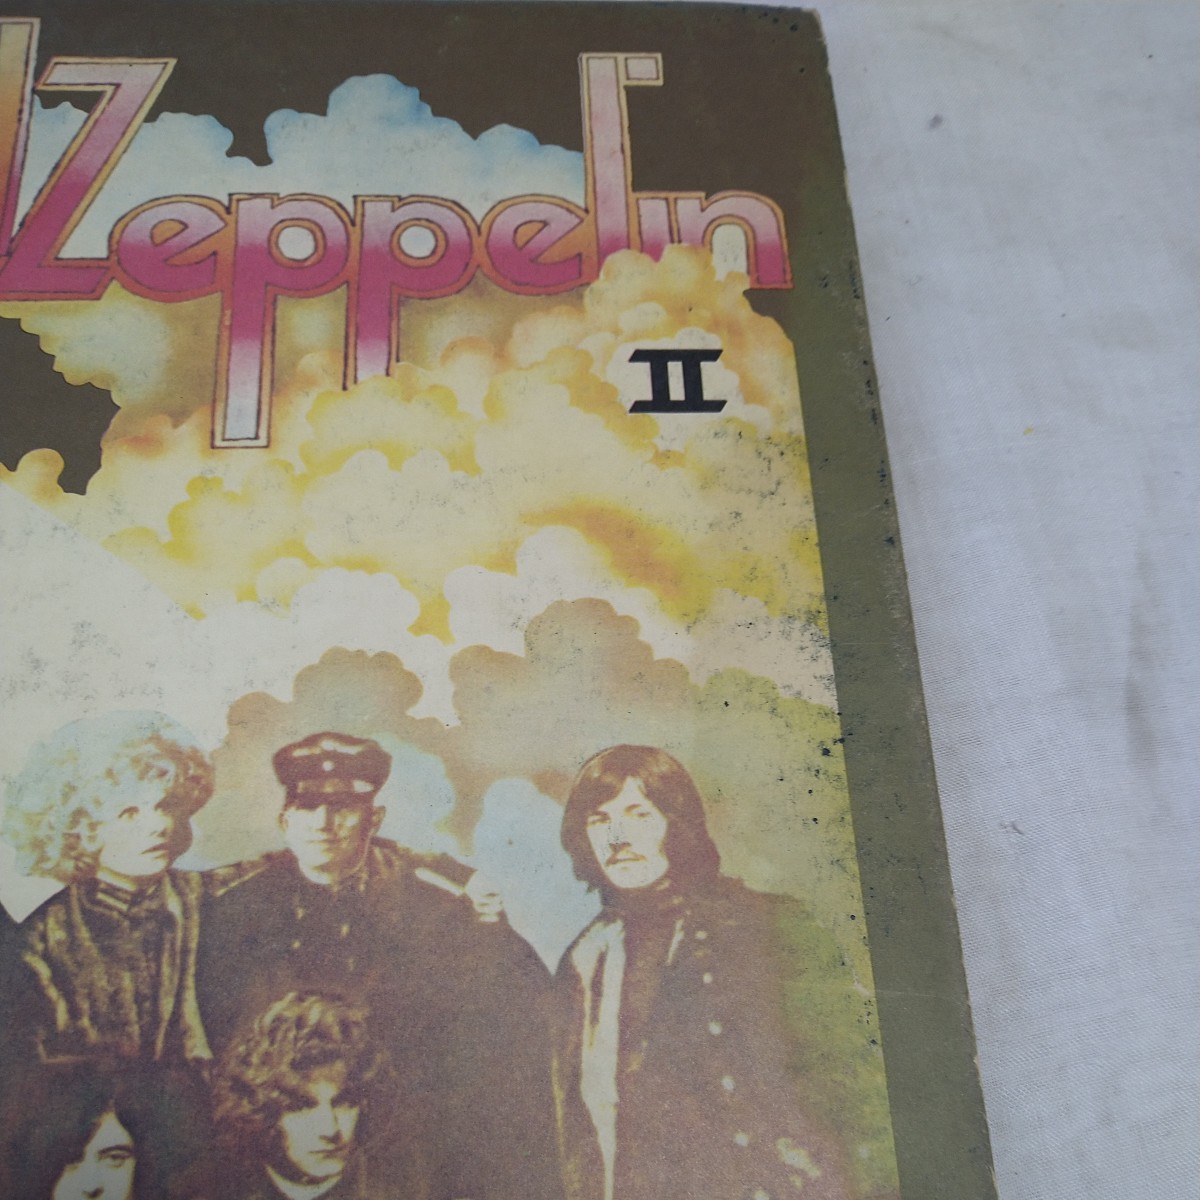 n-302◆ レッド ツェッペリン II/ Led Zeppelin Ⅱ 国内盤 帯なし レコード LP◆状態は画像で確認してください_画像3